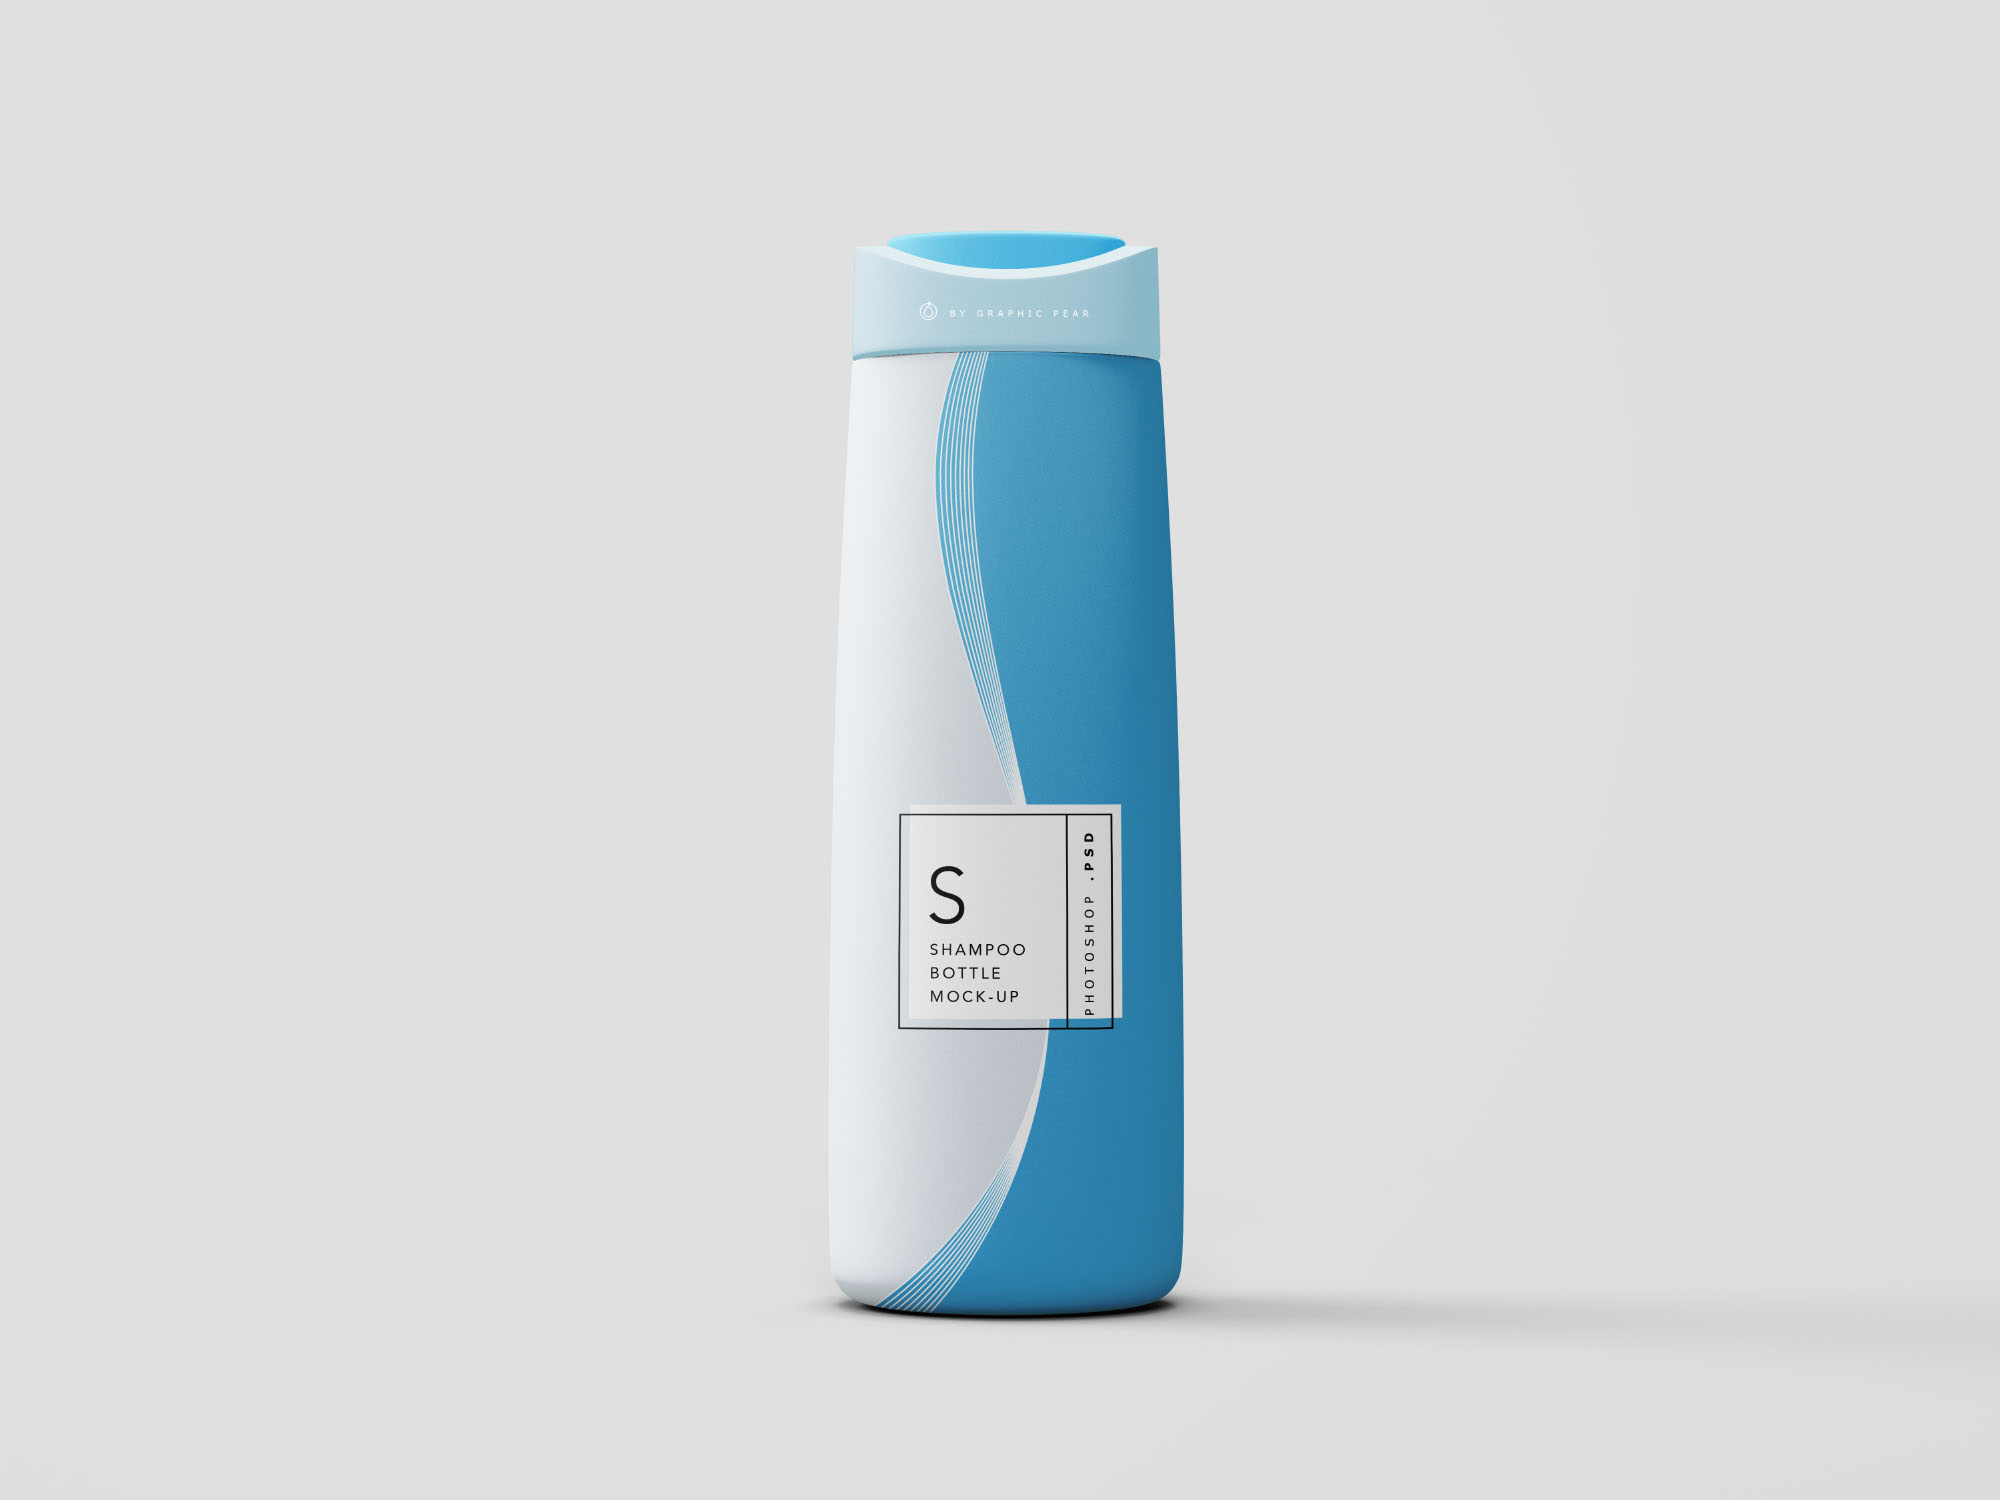 沐浴露＆洗发水瓶包装外观设计PSD样机模板 Shampoo Bottle Mockup PSD插图